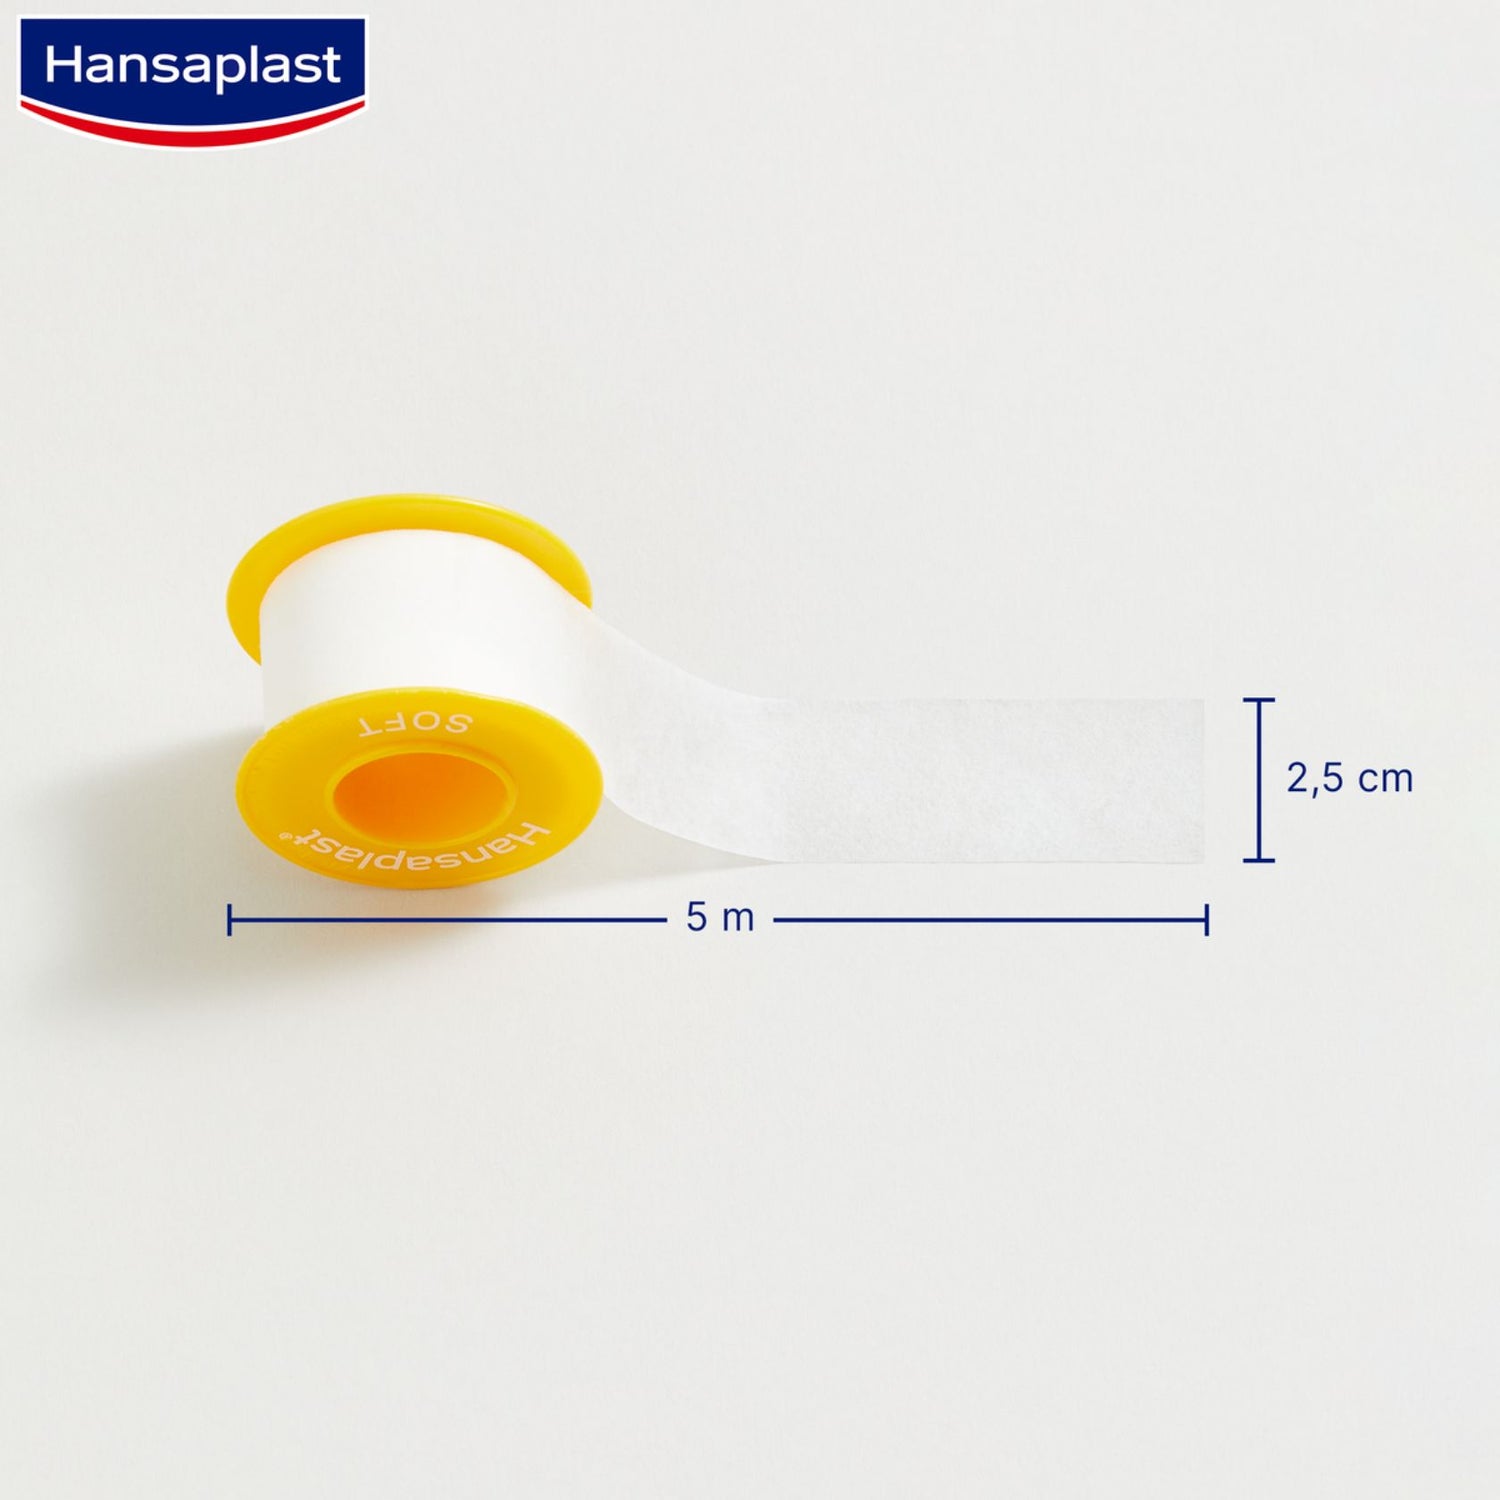 Hansaplast Med+ Soft Fixation Tape 5mx2.5cm (5.5ydx1.0in)